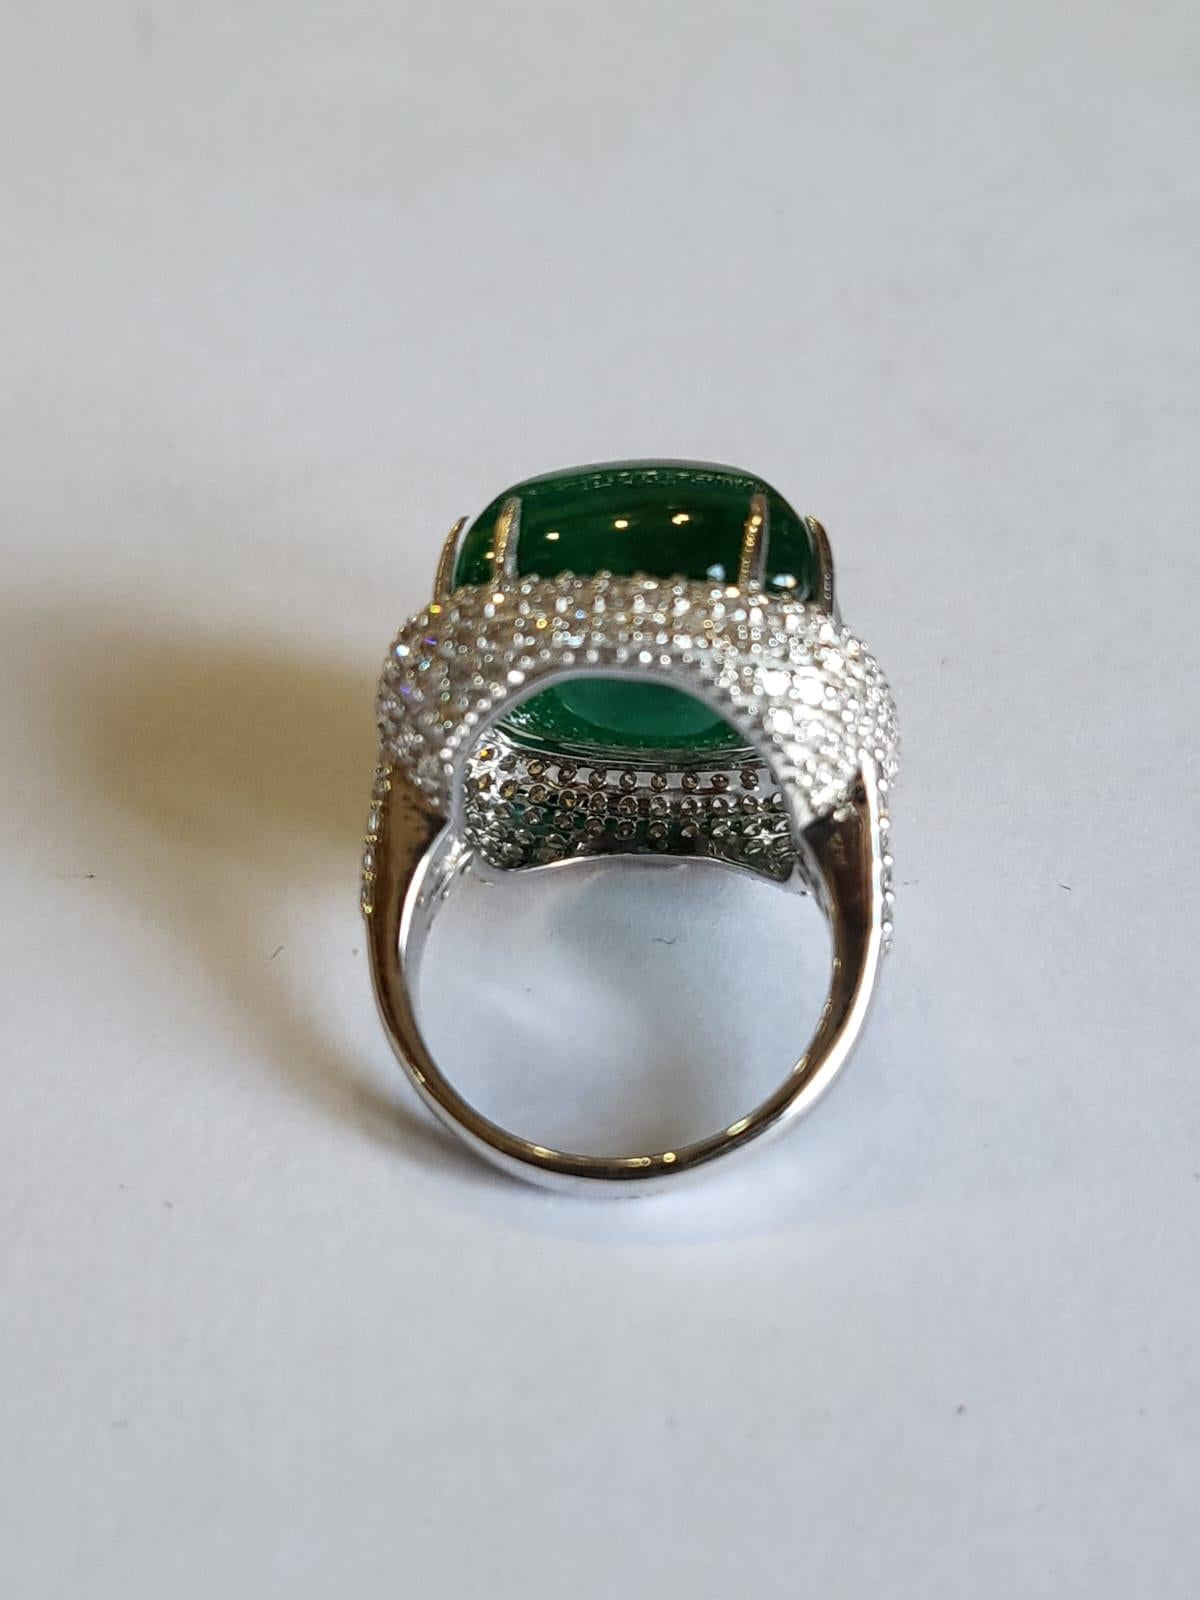 Sugarloaf Cabochon 24.99 Carats, Natural Zambian Emerald Sugarloaf & Diamonds Engagement Ring